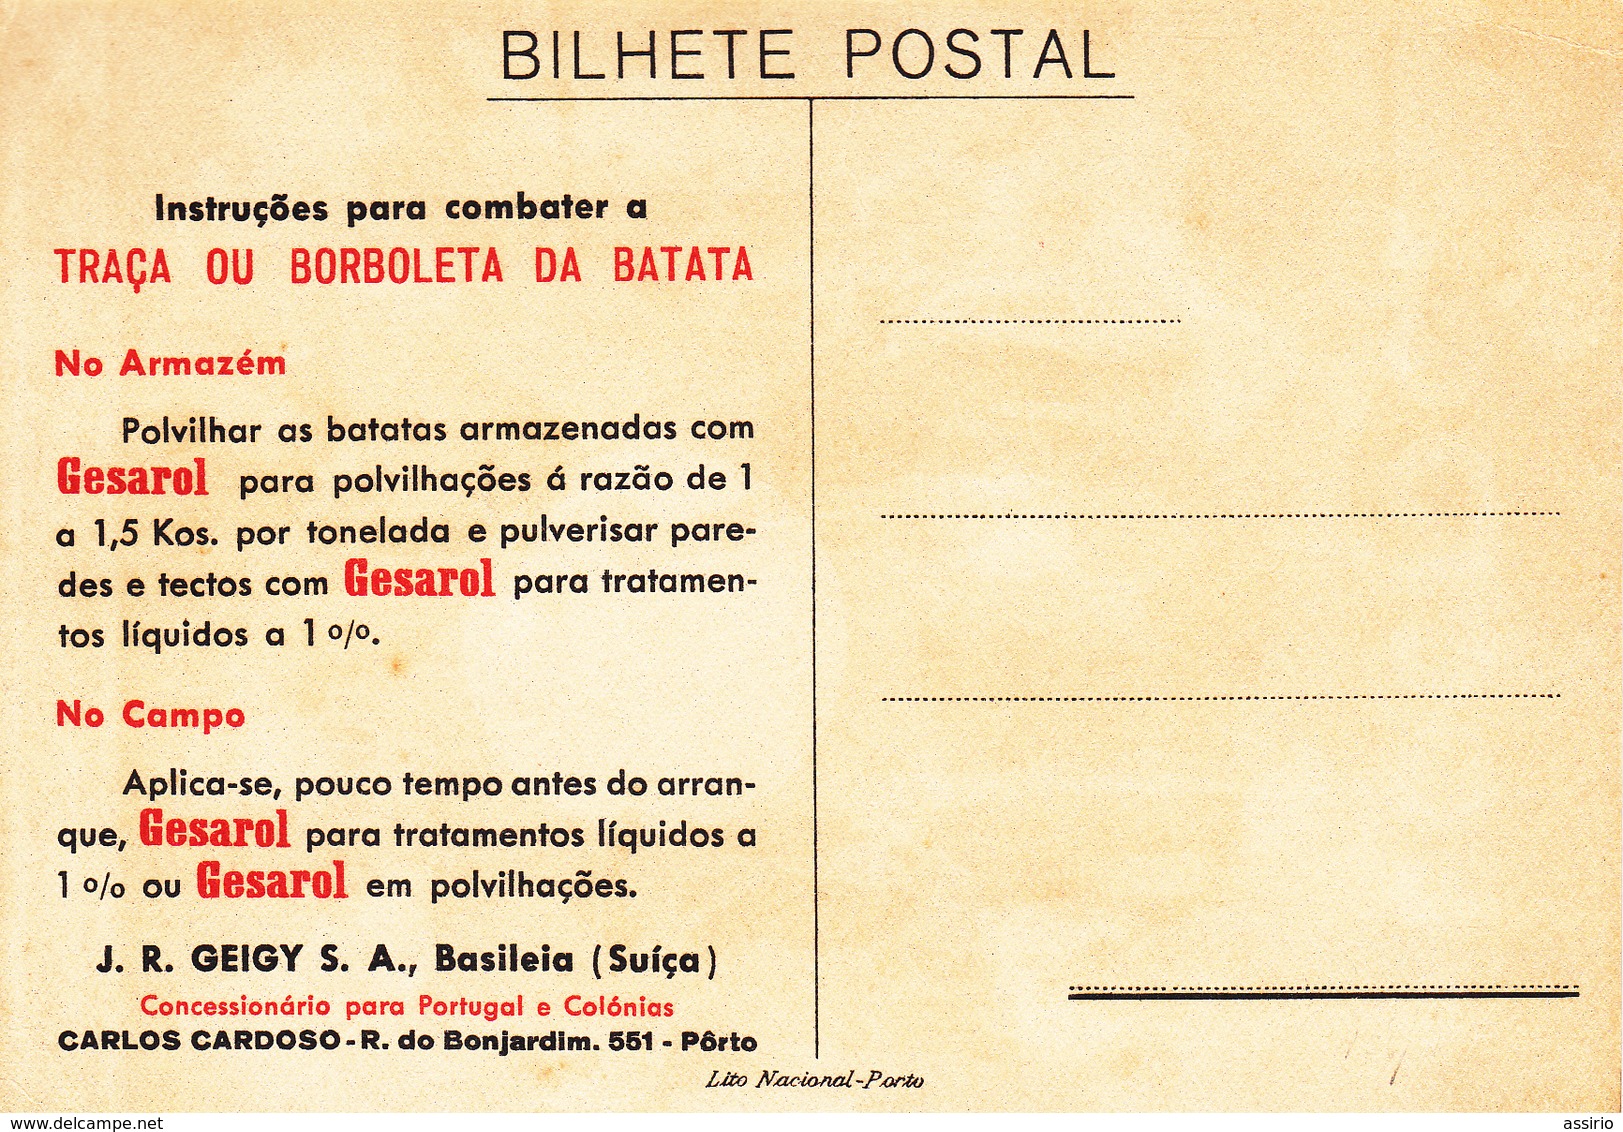 Portugal - 6 postais de propaganda, circulados